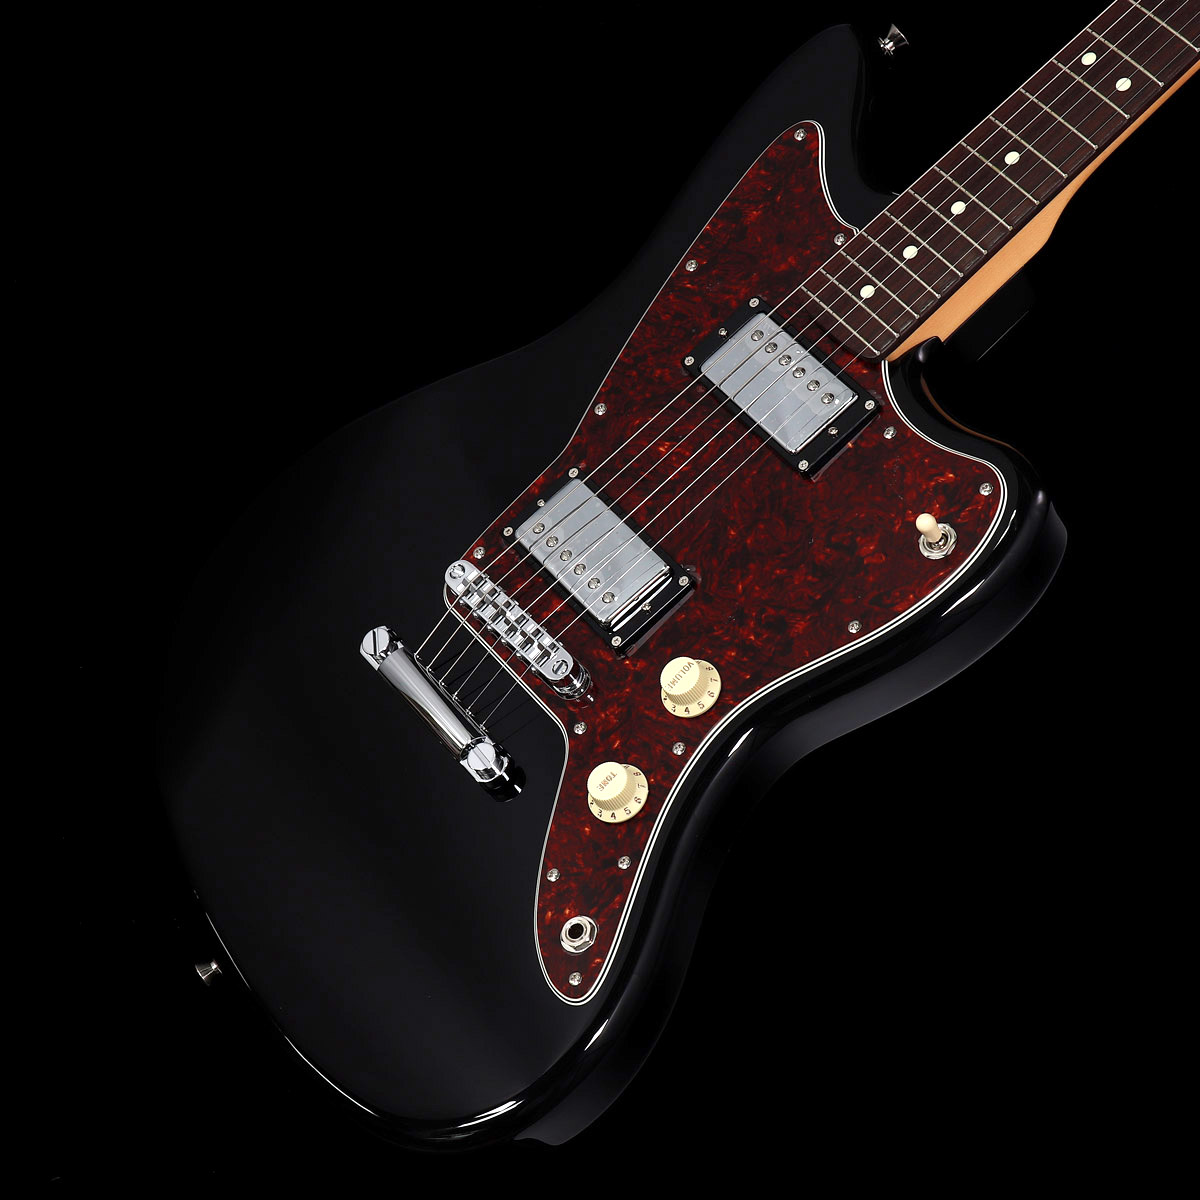 Fender / Made in Japan Limited Adjusto-Matic Jazzmaster HH Black